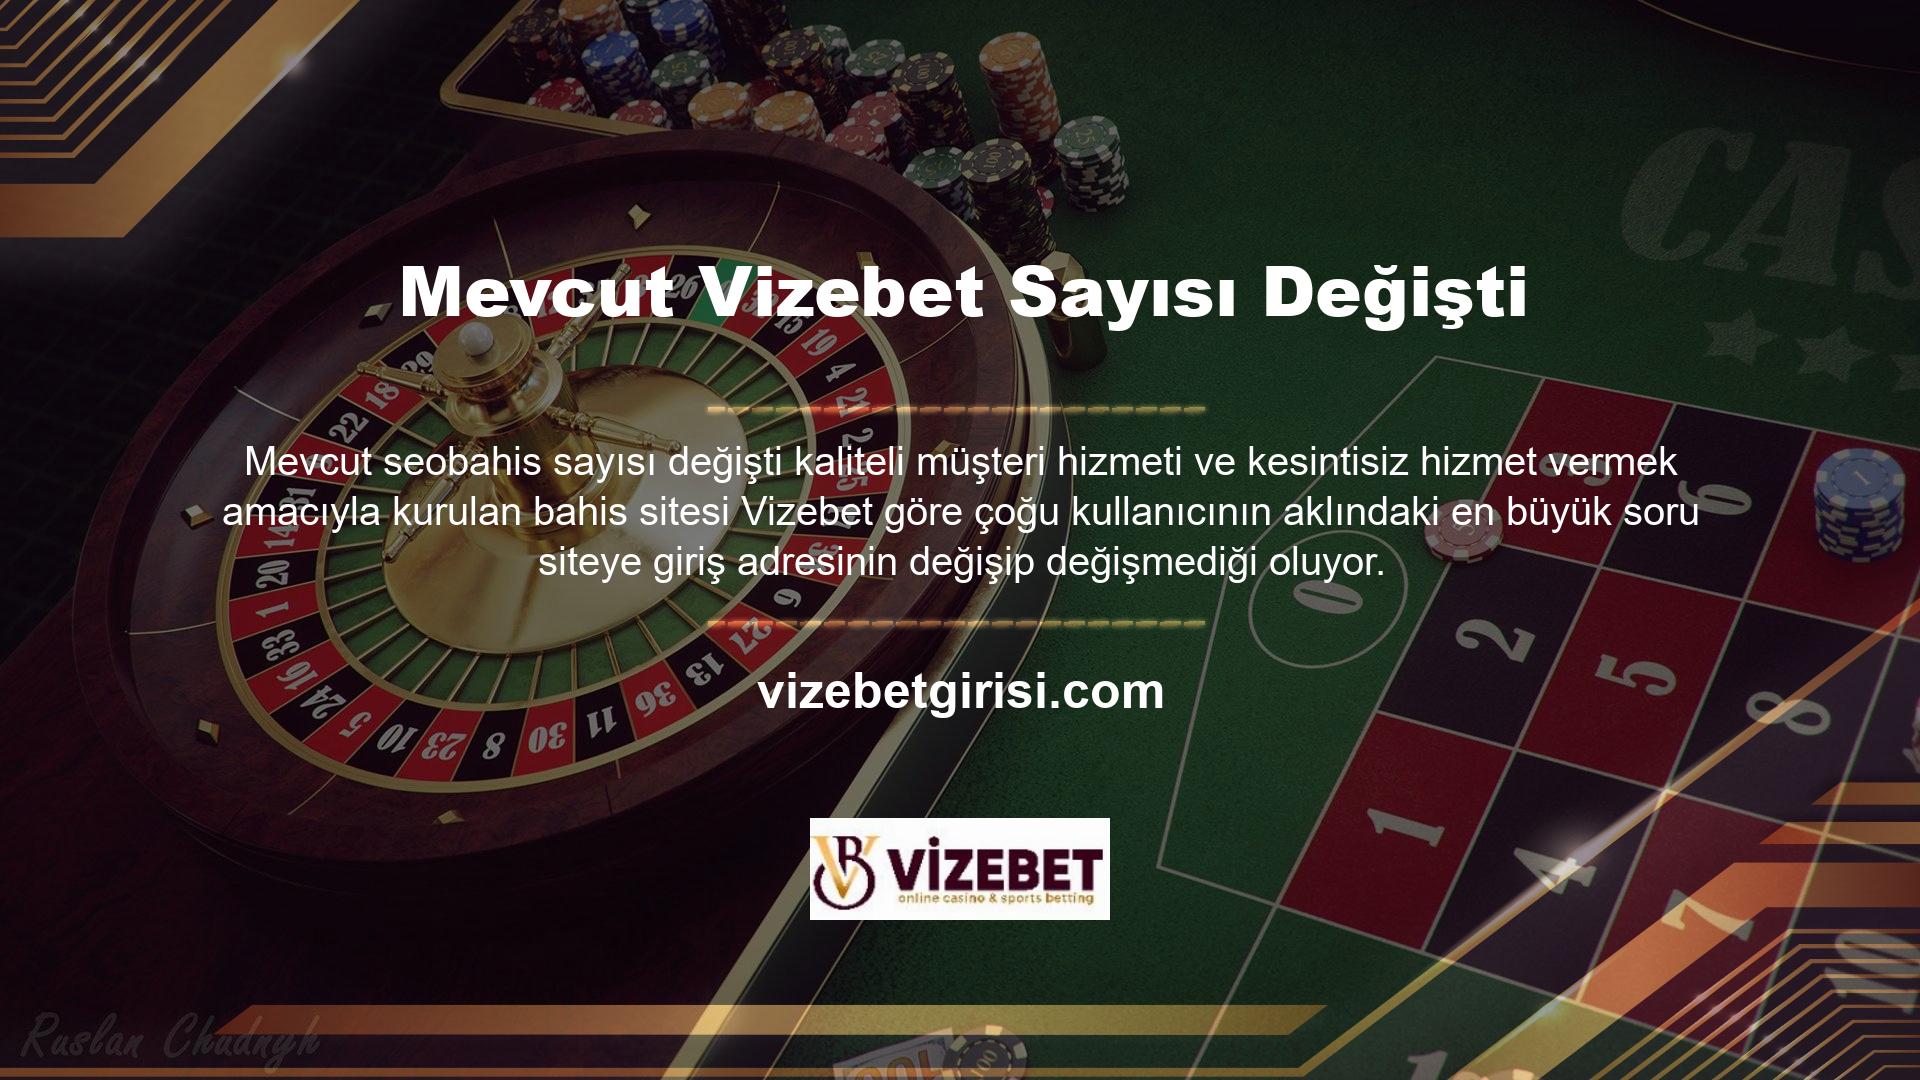 Türkiye'deki yasa dışı casino hizmeti sağlayıcılara karşı ulusal bir ajans olan B